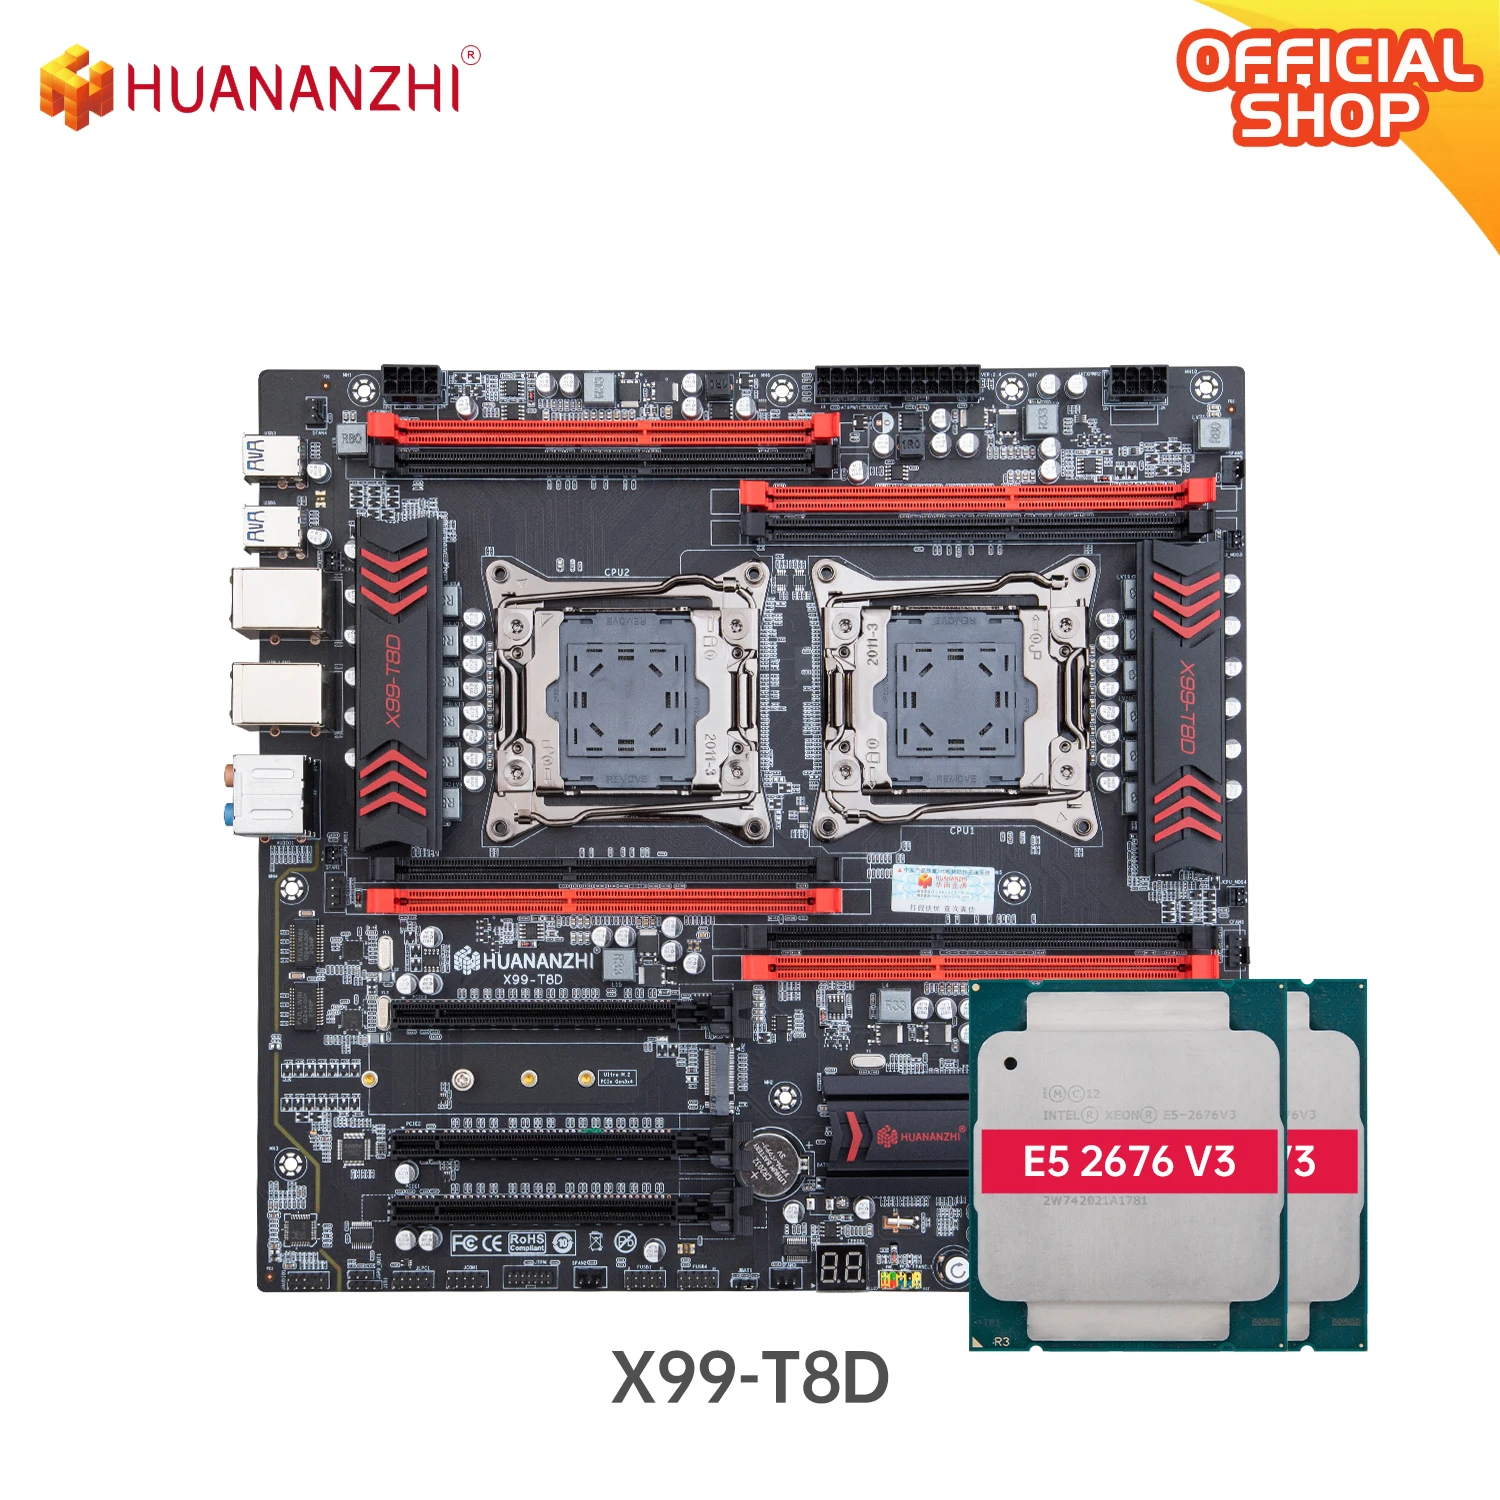 

HUANANZHI X99 T8D X99 Motherboard with Intel XEON E5 2676 V3*2 combo kit set LGA 2011-3 E5 V3 DDR3 RECC SATA3 E-ATX Server